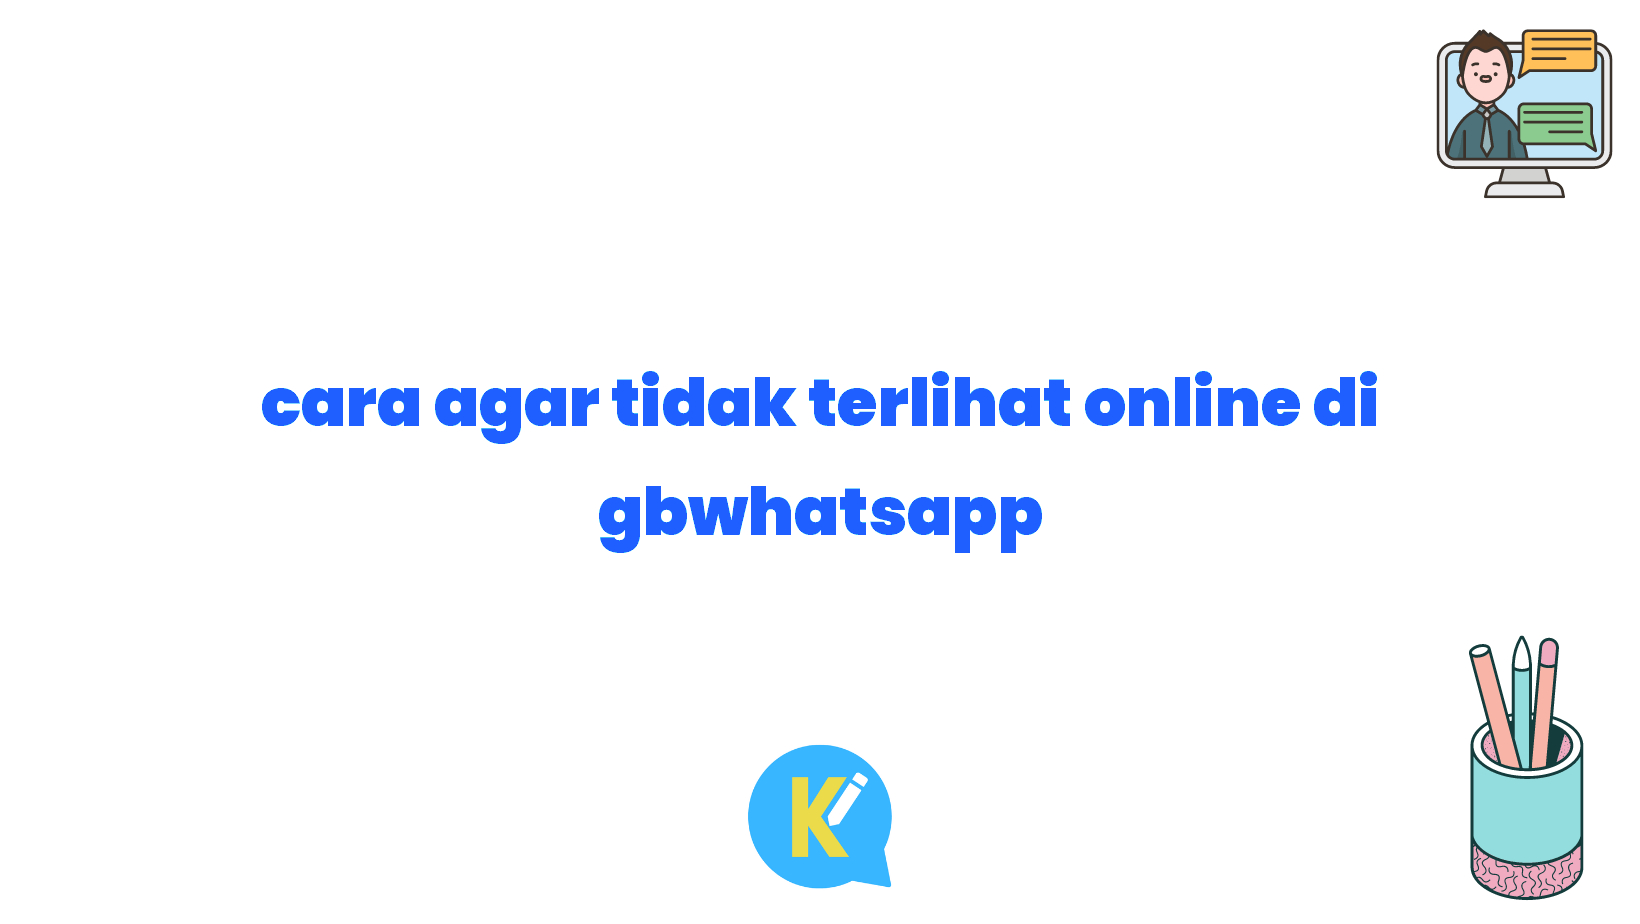 cara agar tidak terlihat online di gbwhatsapp